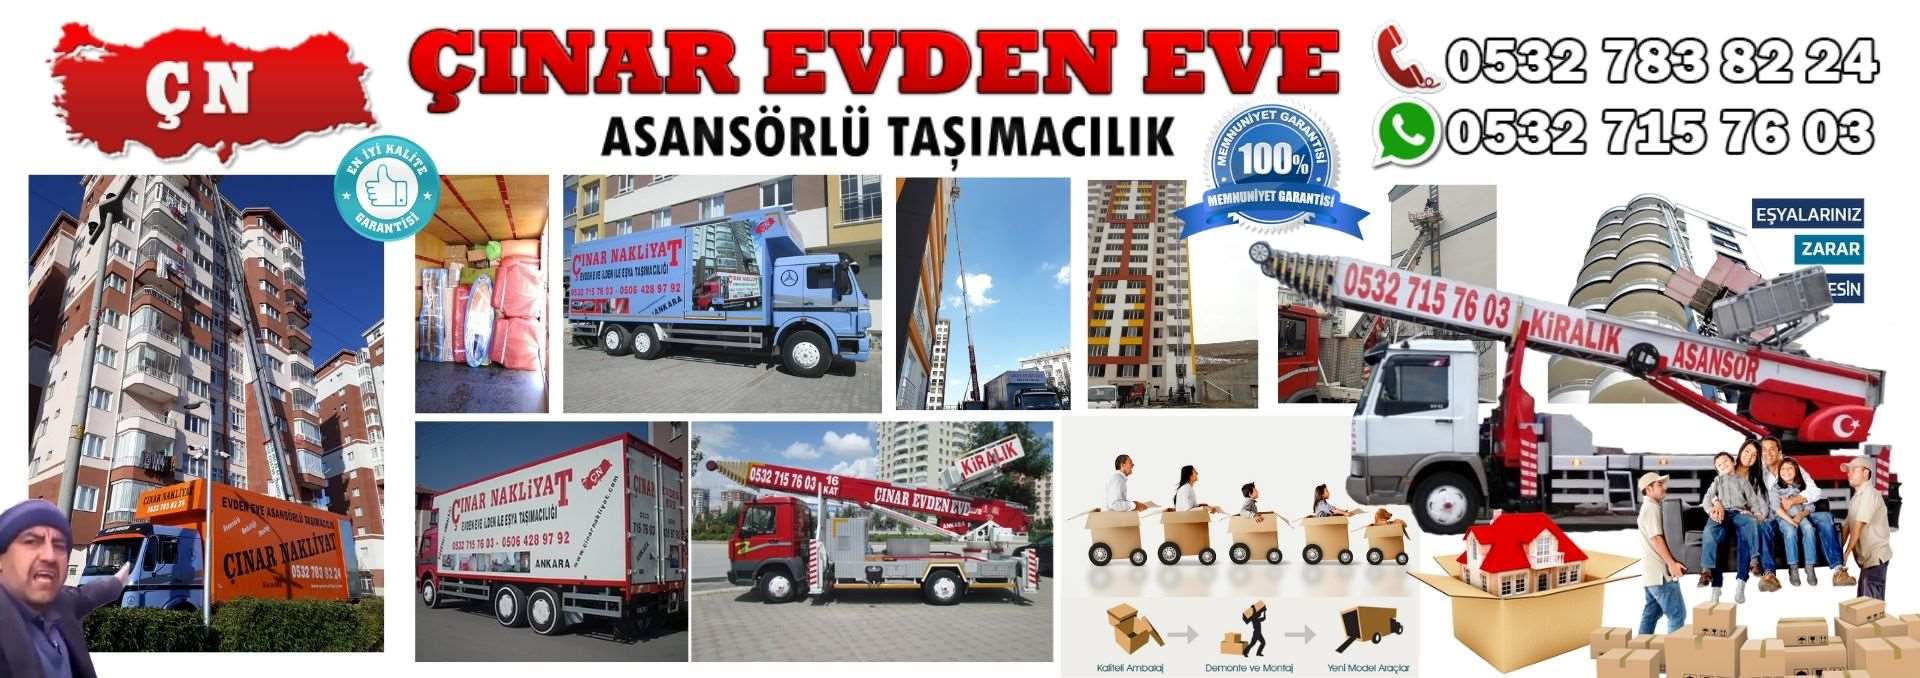 Ankara Beypazarı Evden Eve Asansörlü Ev Eşyası Taşıma 0532 715 76 03